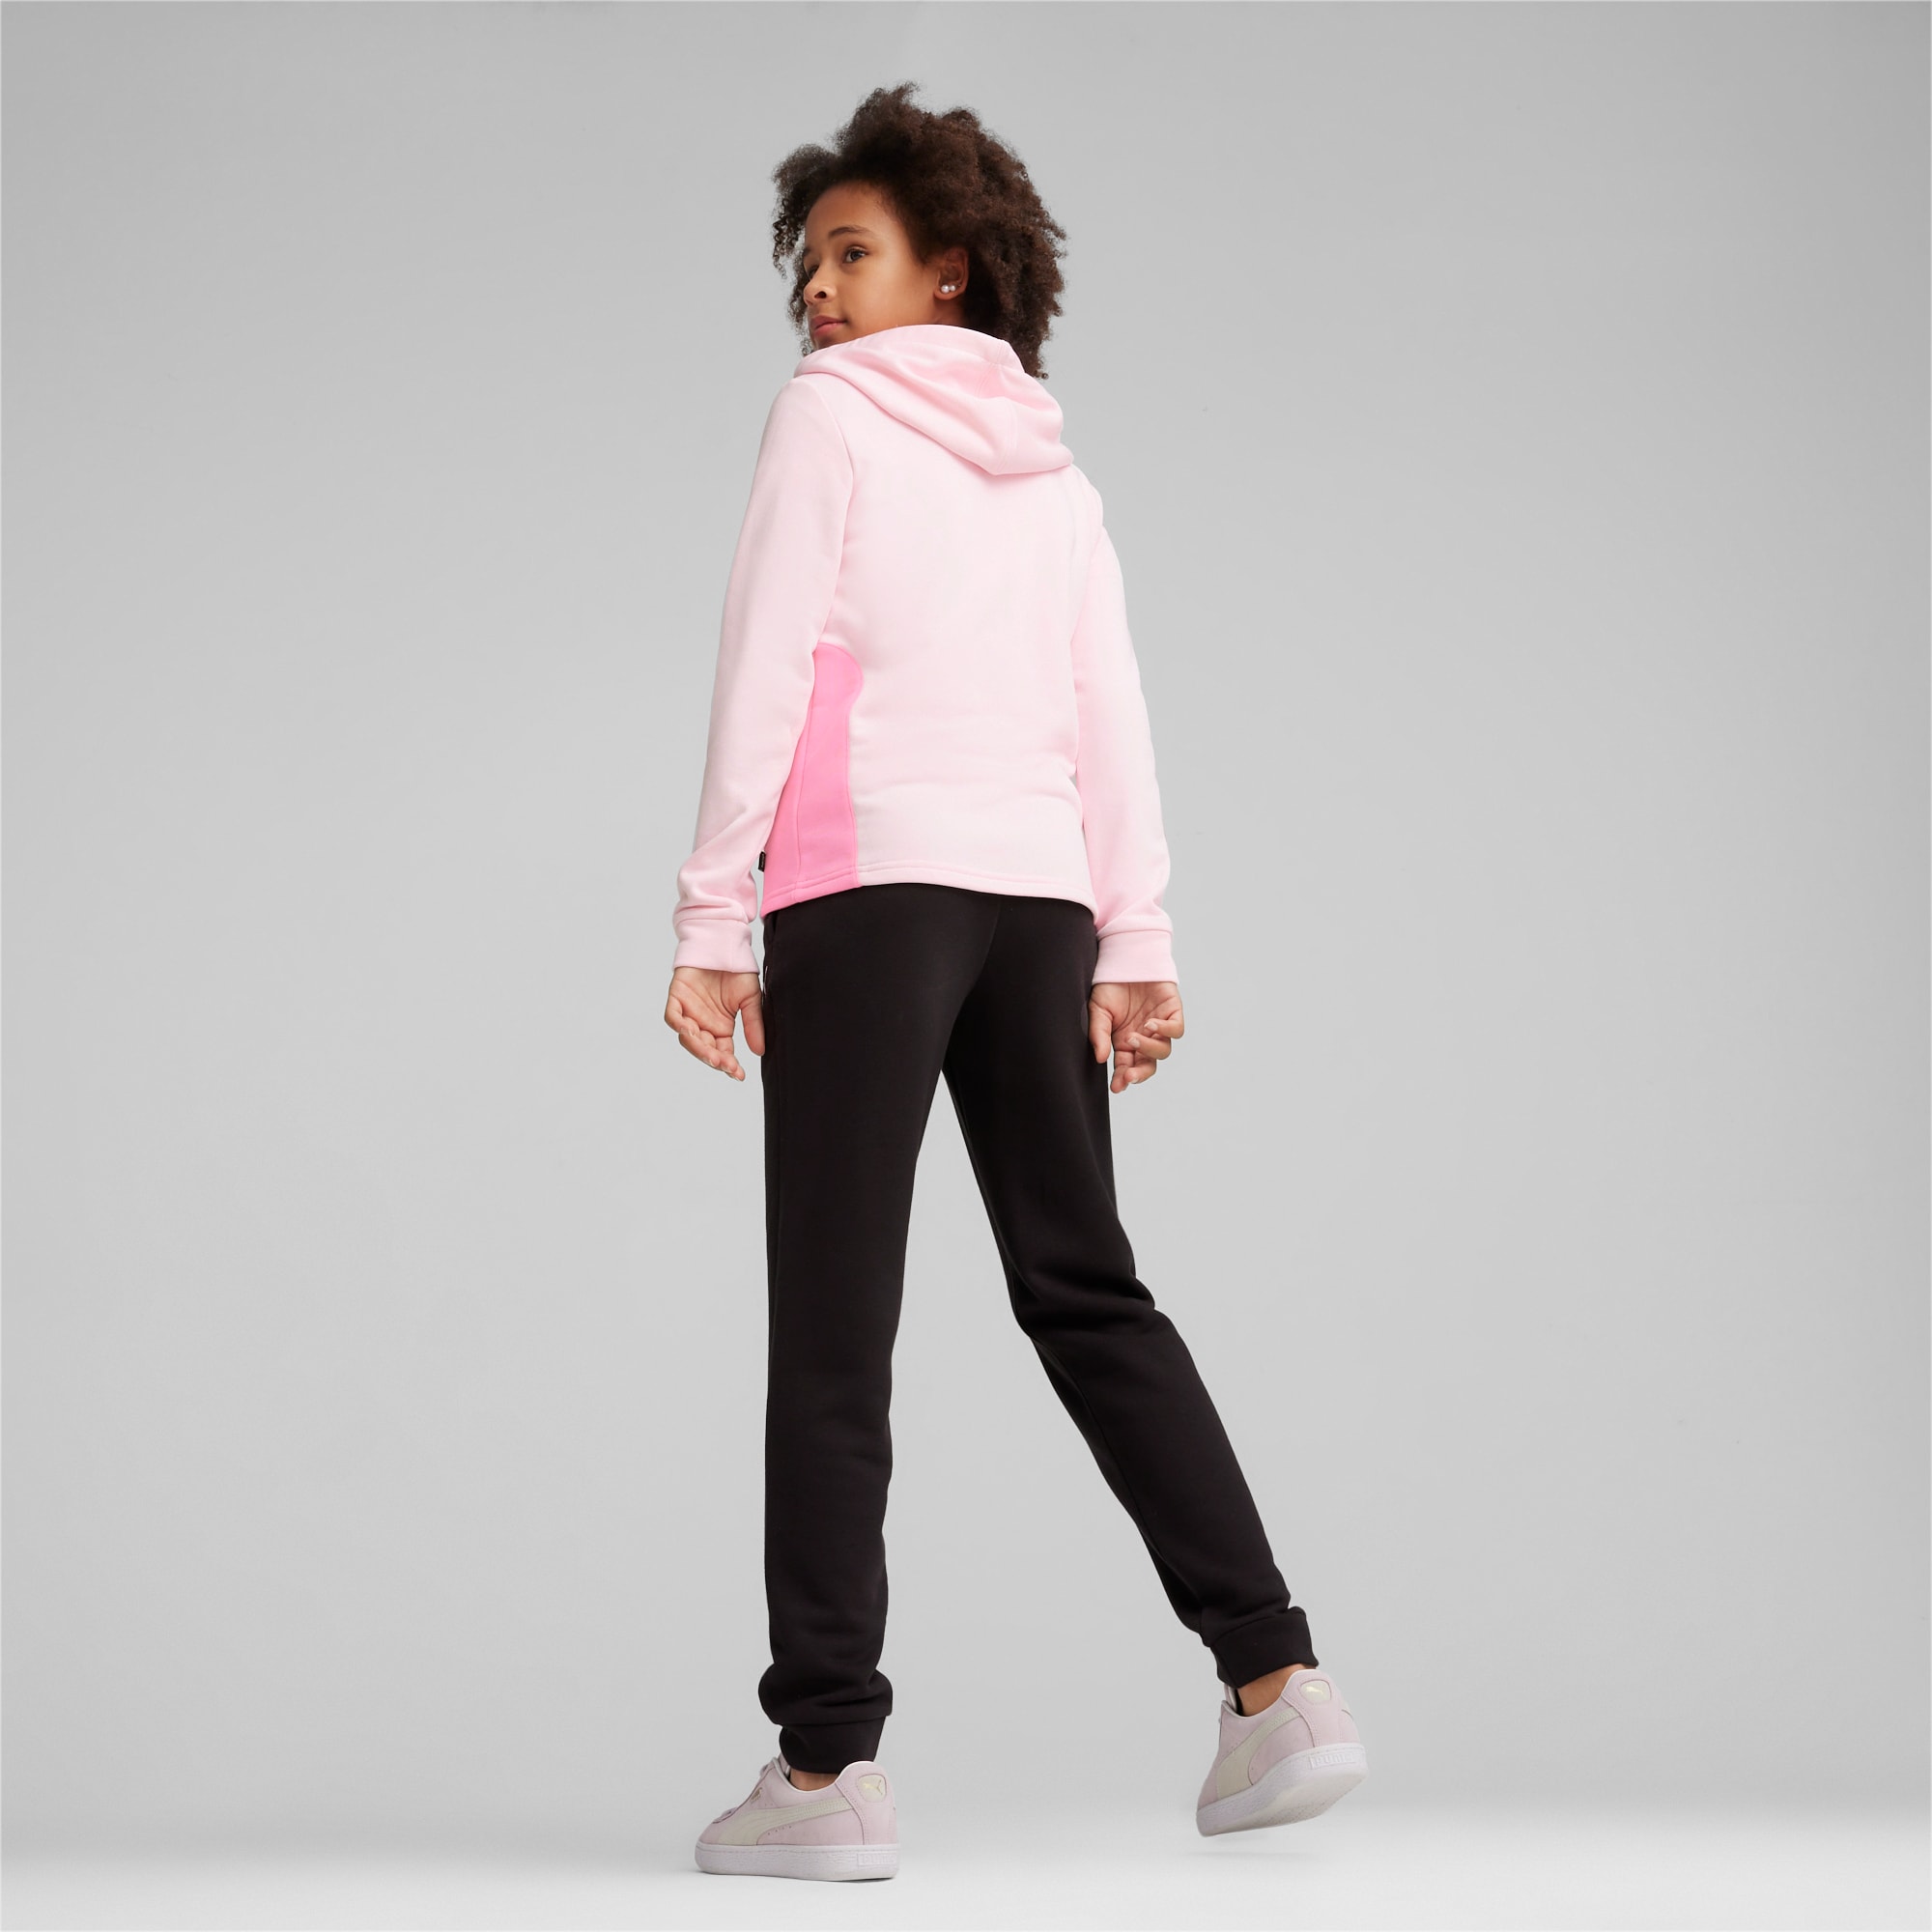 PUMA Chaussure Survêtement à Capuche Adolescent Pour Enfant, Rose/Blanc